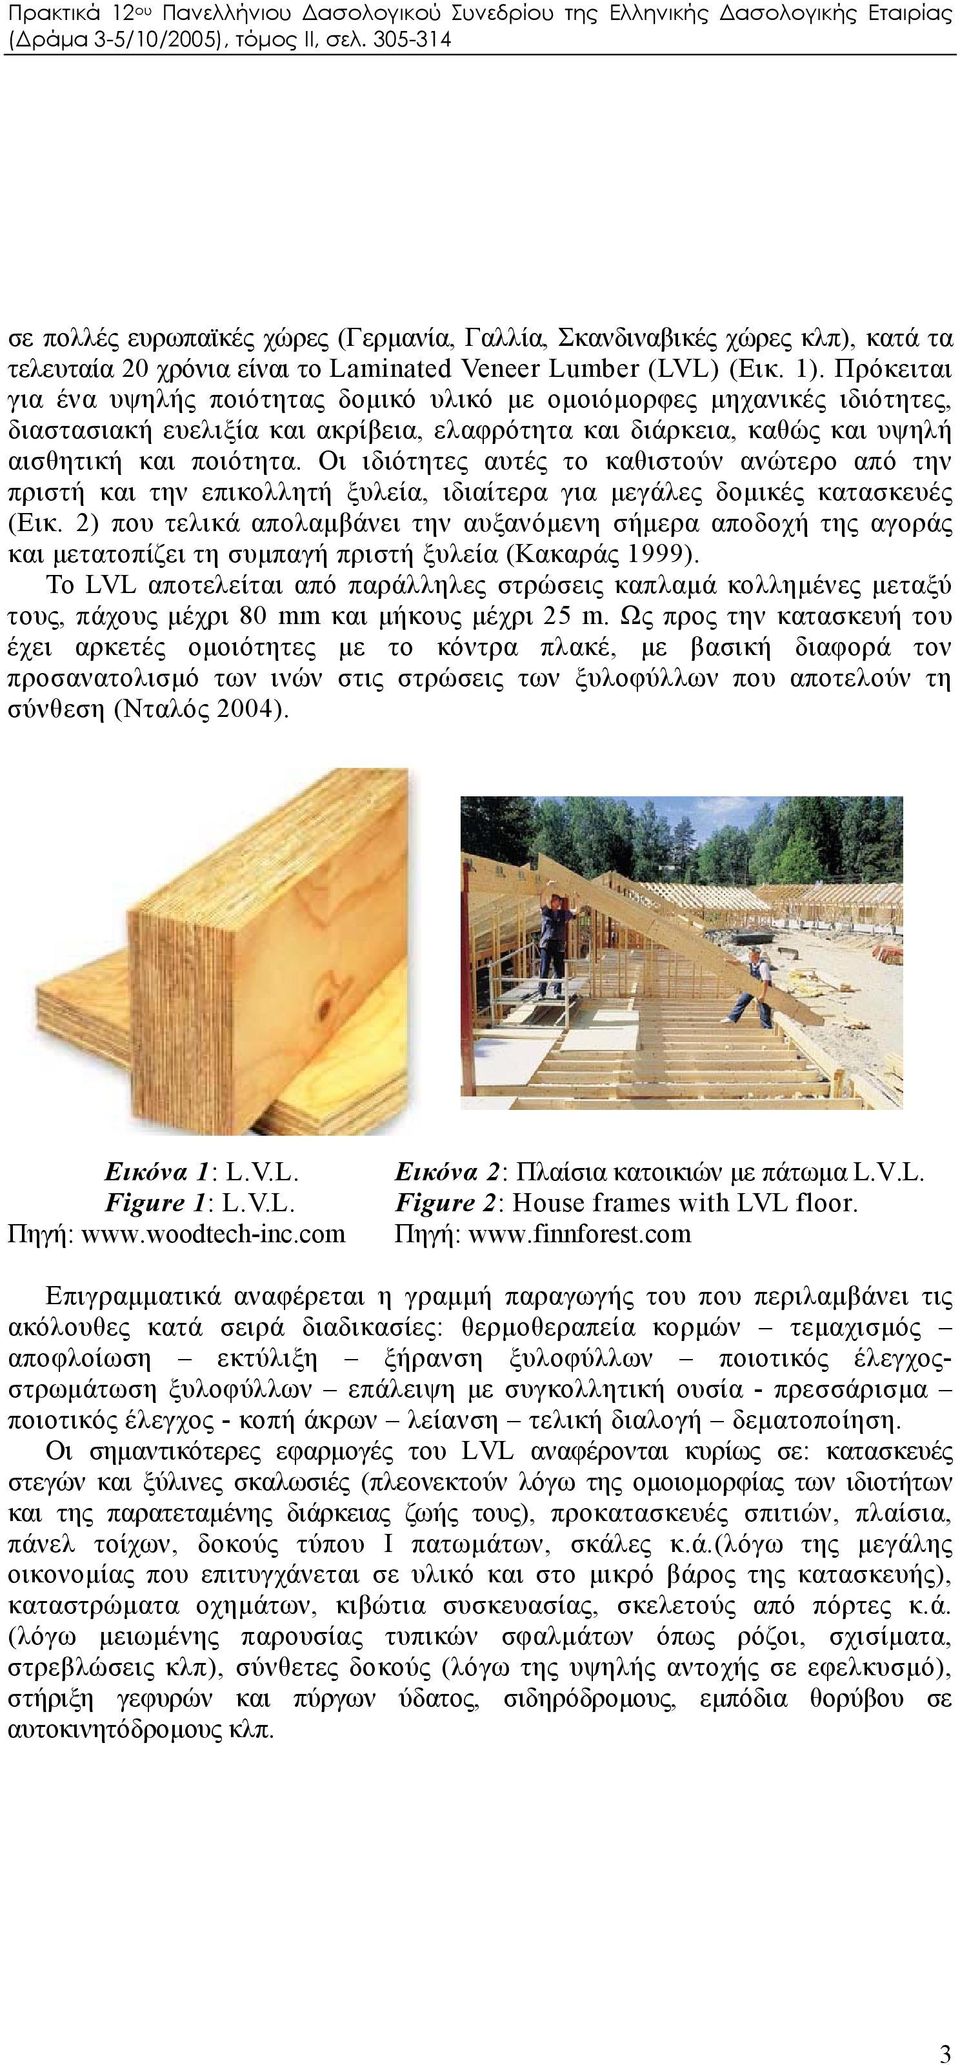 Οι ιδιότητες αυτές το καθιστούν ανώτερο από την πριστή και την επικολλητή ξυλεία, ιδιαίτερα για μεγάλες δομικές κατασκευές (Εικ.